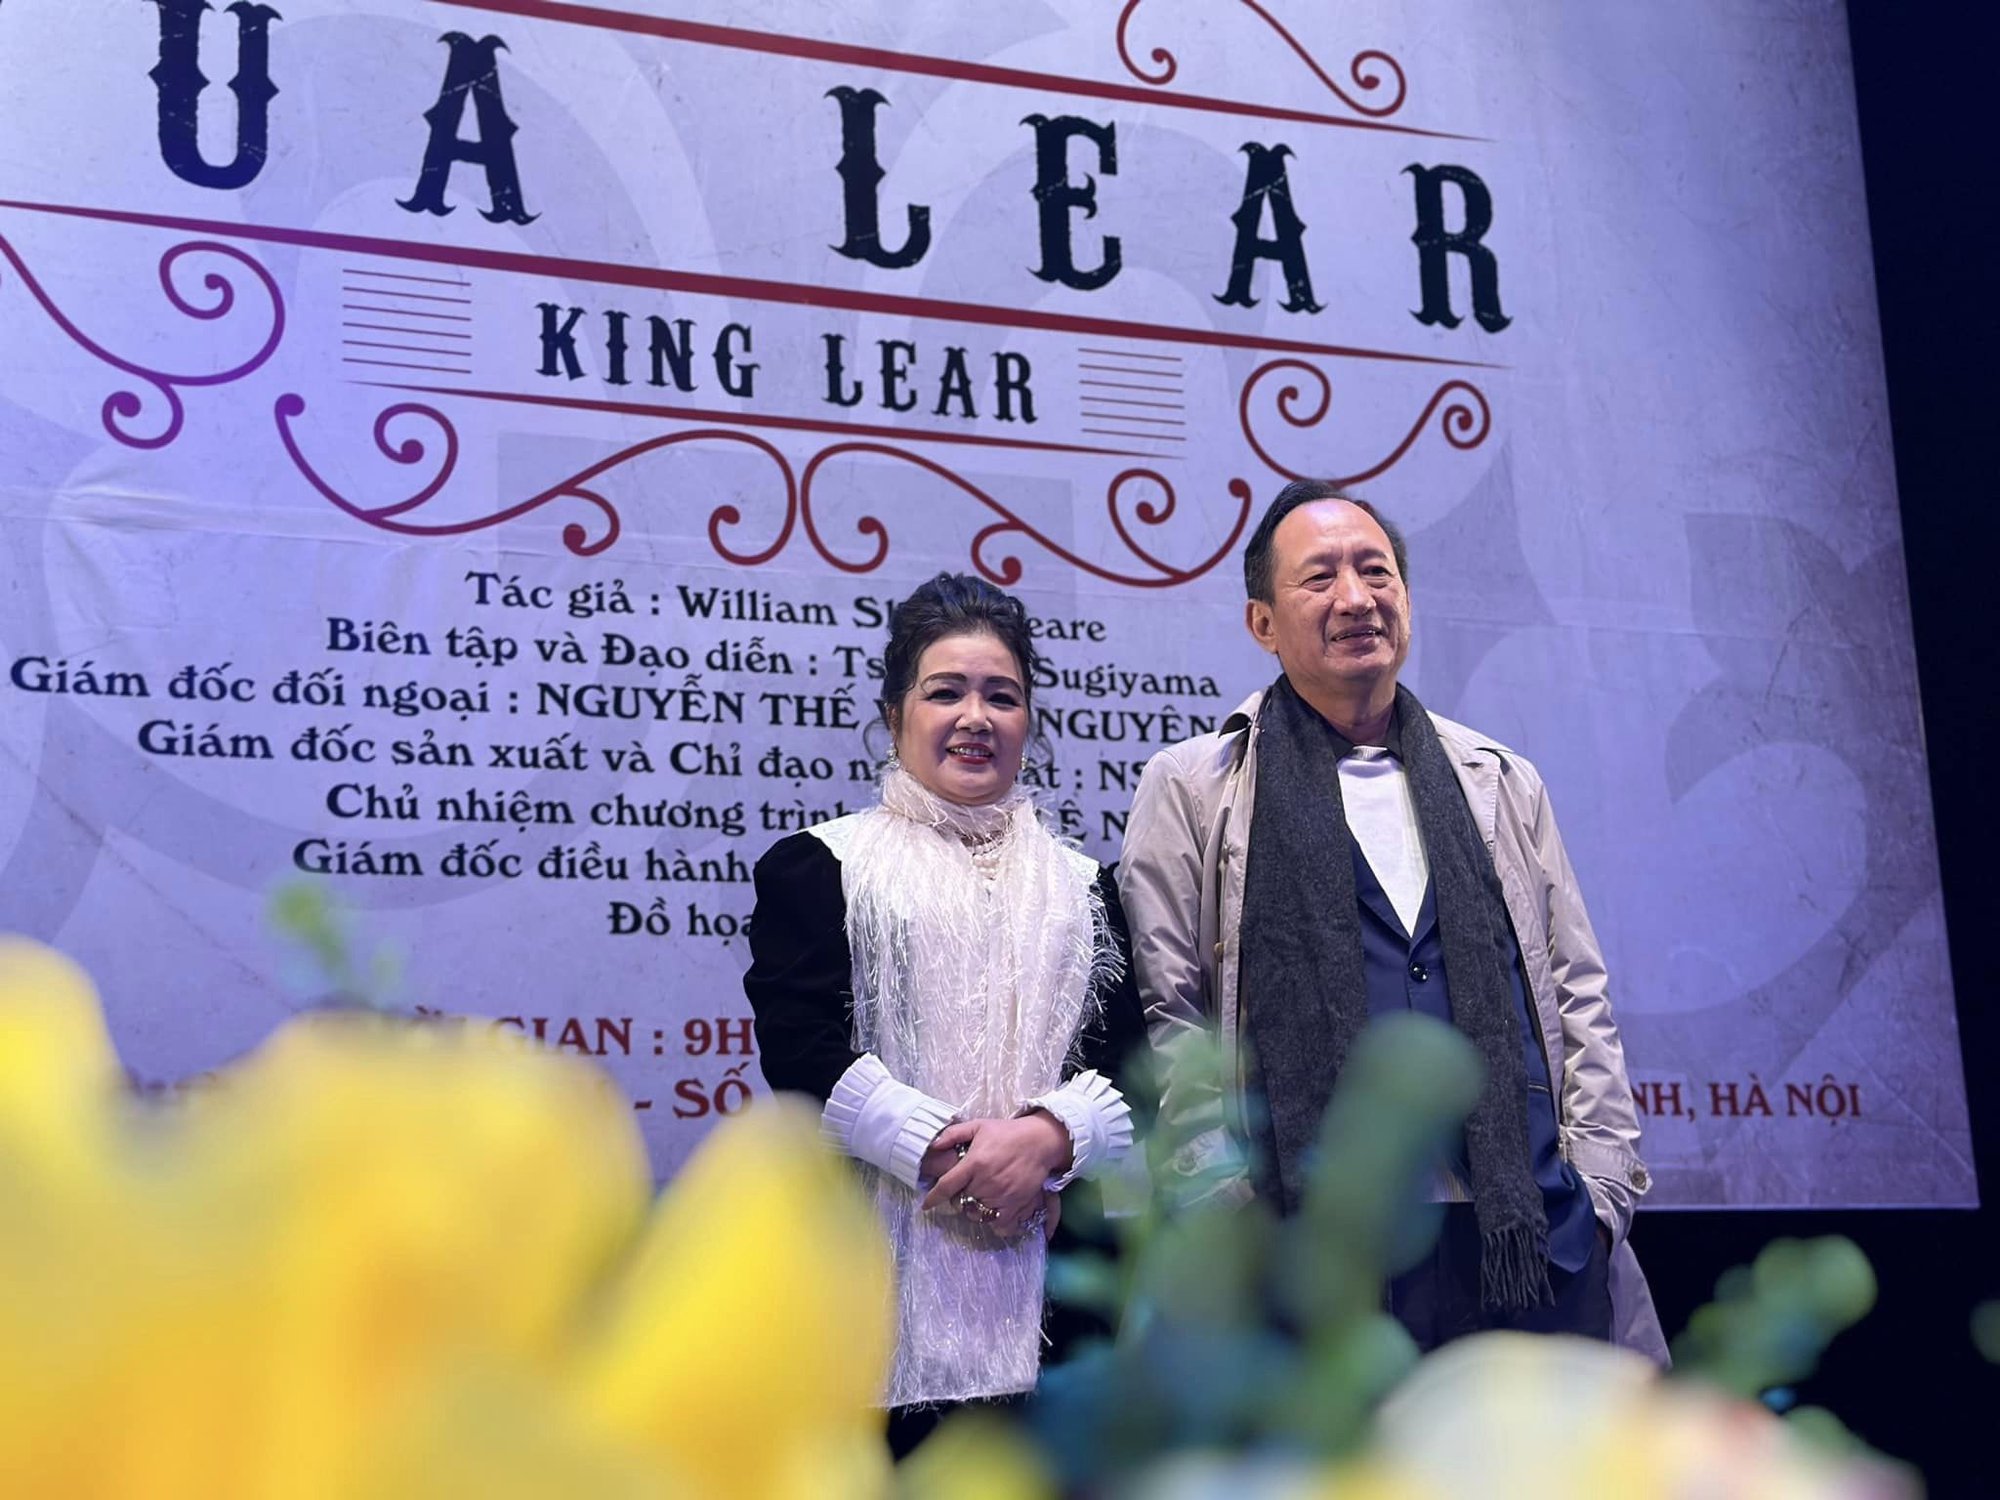 Đạo diễn người Nhật dựng “Vua Lear” của Shakespeare để thức tỉnh lương tri người Việt - Ảnh 2.